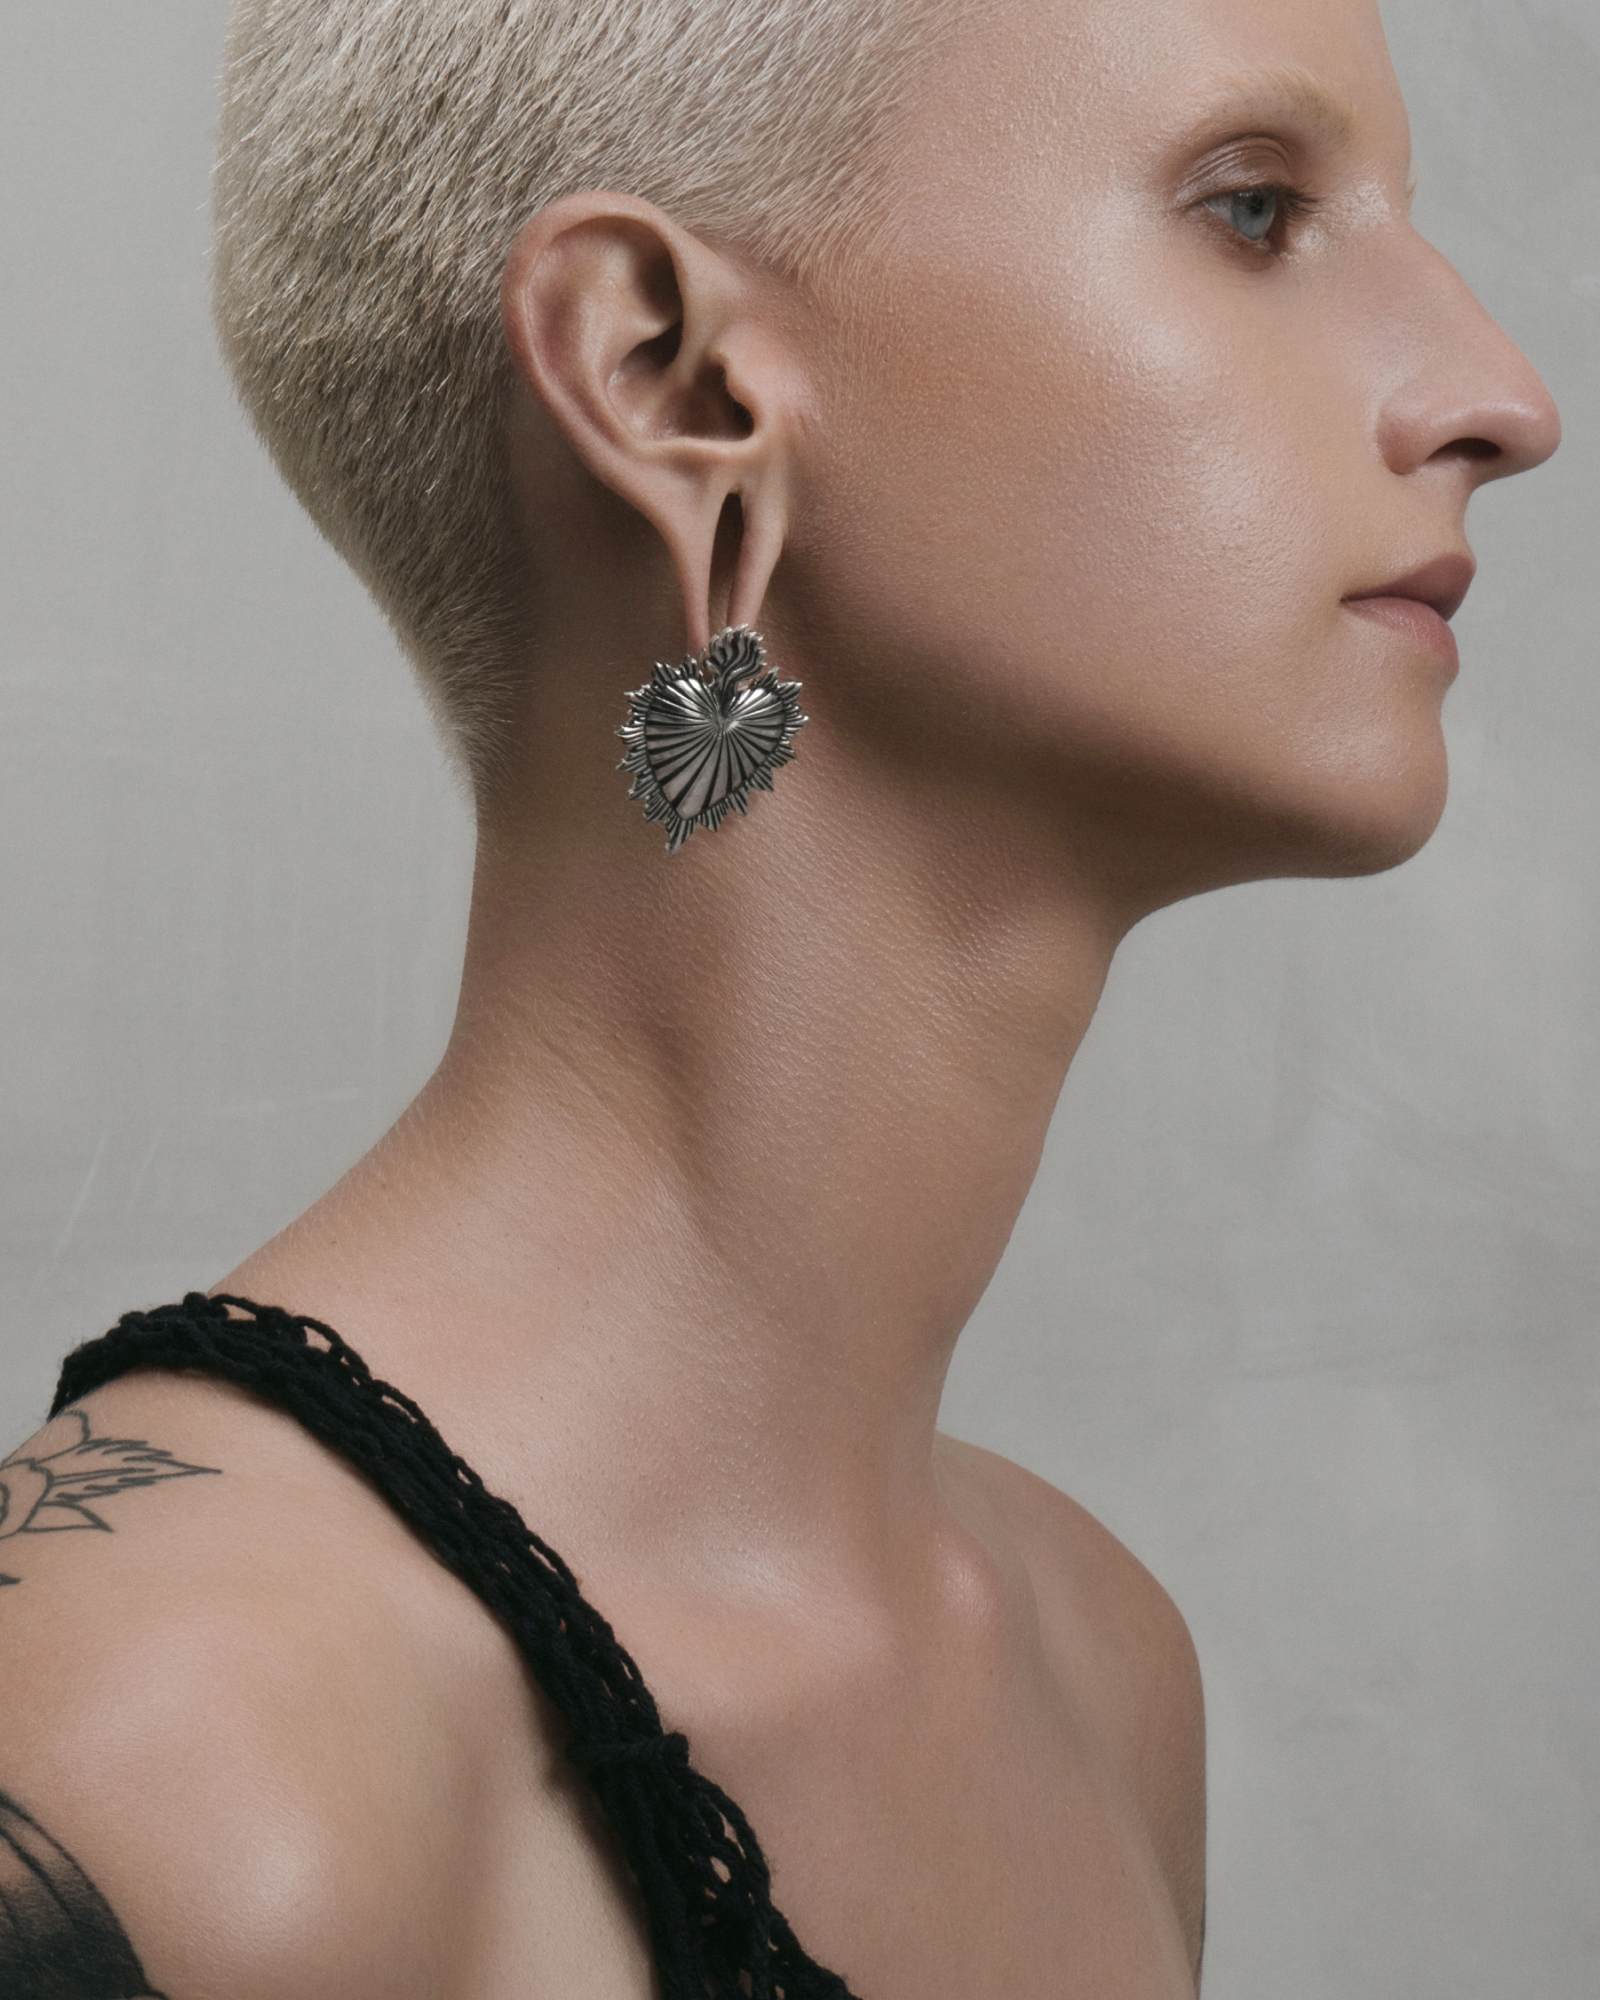 Salem Key Earrings in Silver - Huggie Earrings by Ask & Embla